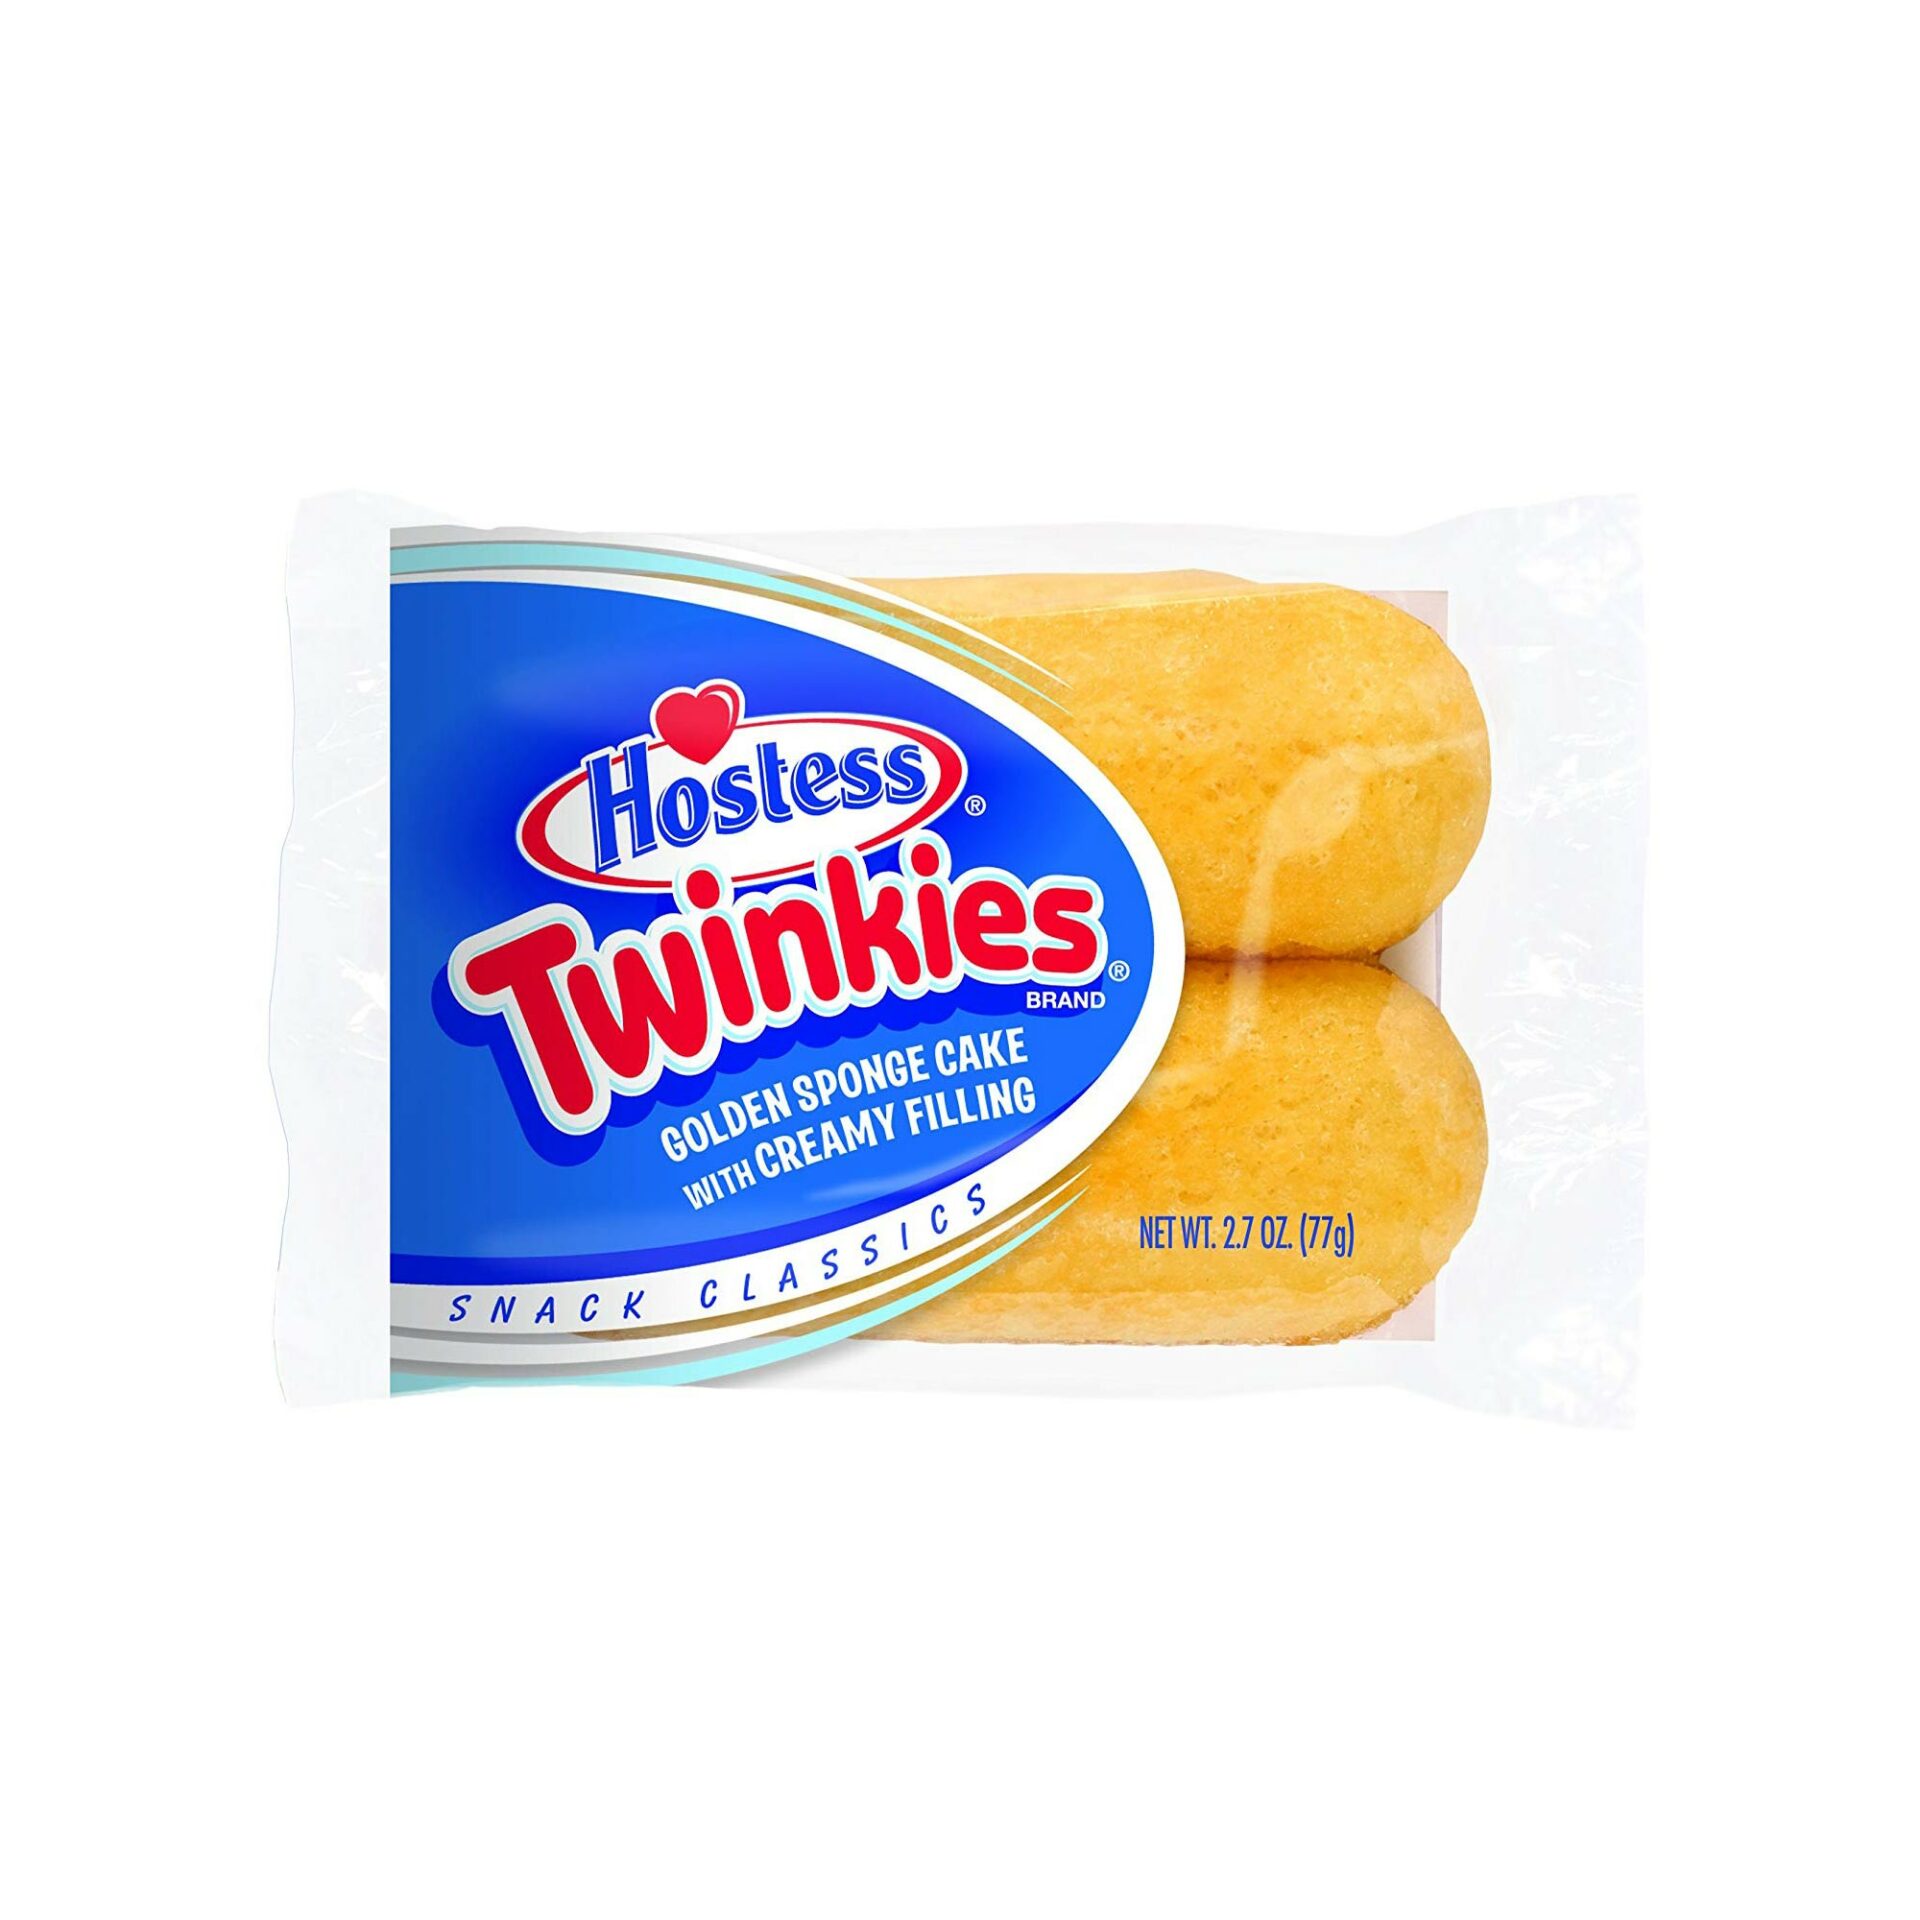 https://voltcandy.com/wp-content/uploads/2020/01/Hostess-Twinkies-1.jpg